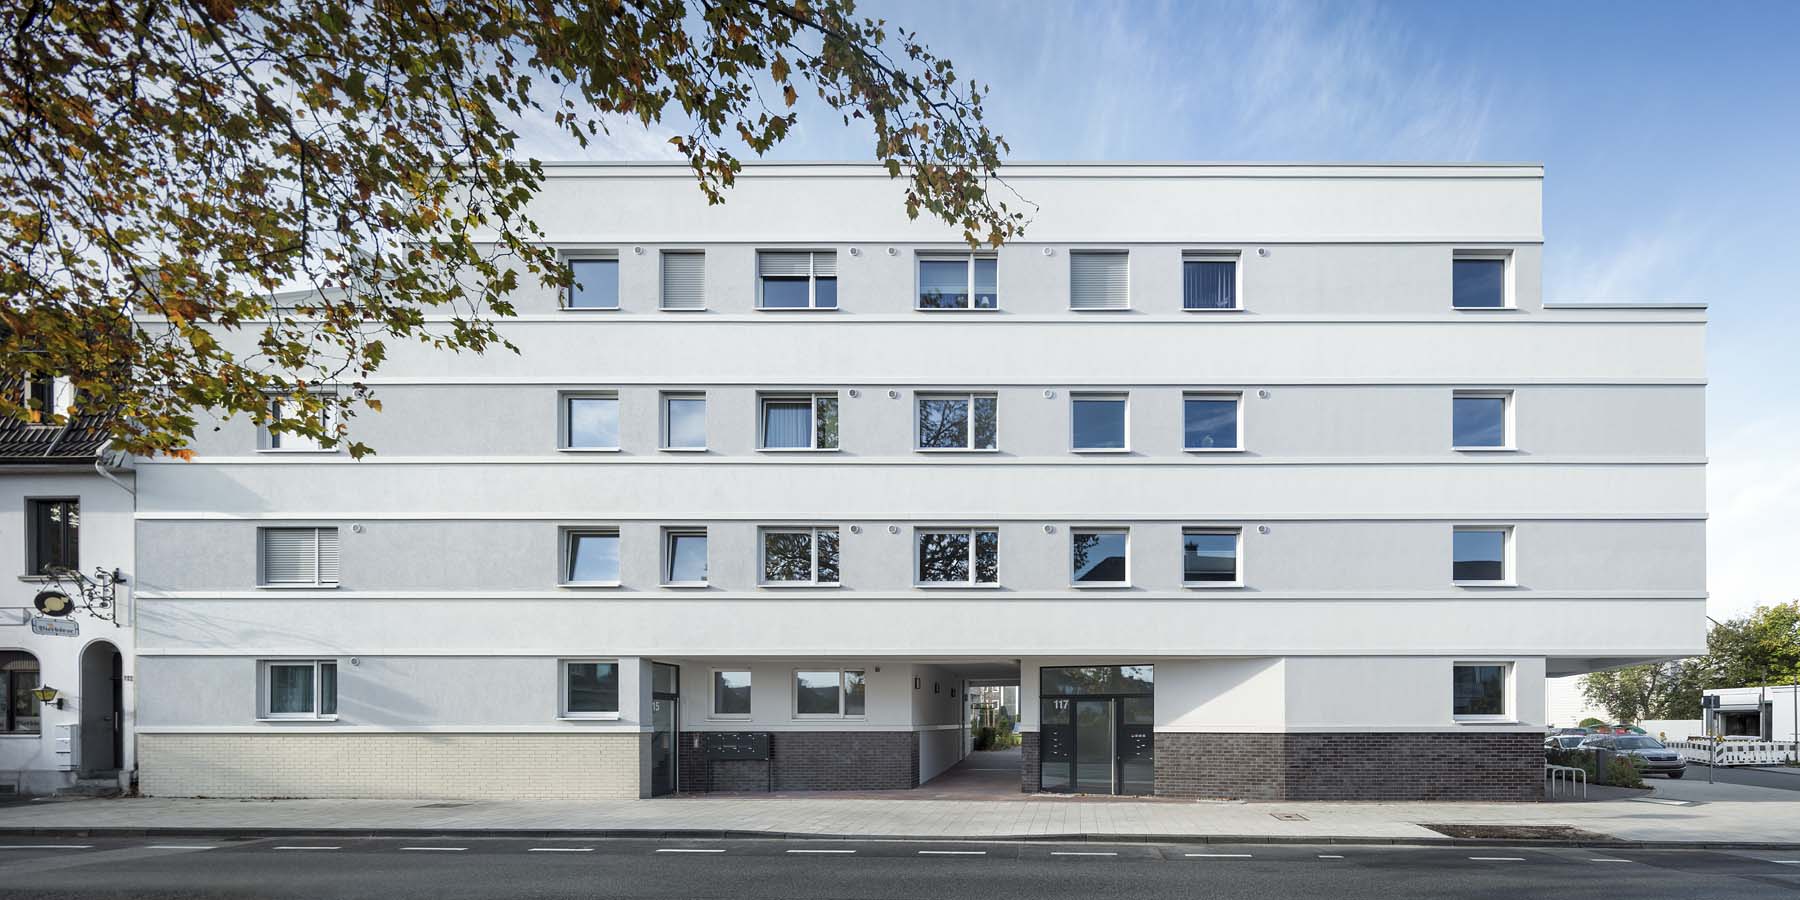 Wohnungsbau Hilden  Pagel Henn Architekten  Gesamtansicht Architekturfotografie Jens Kirchner